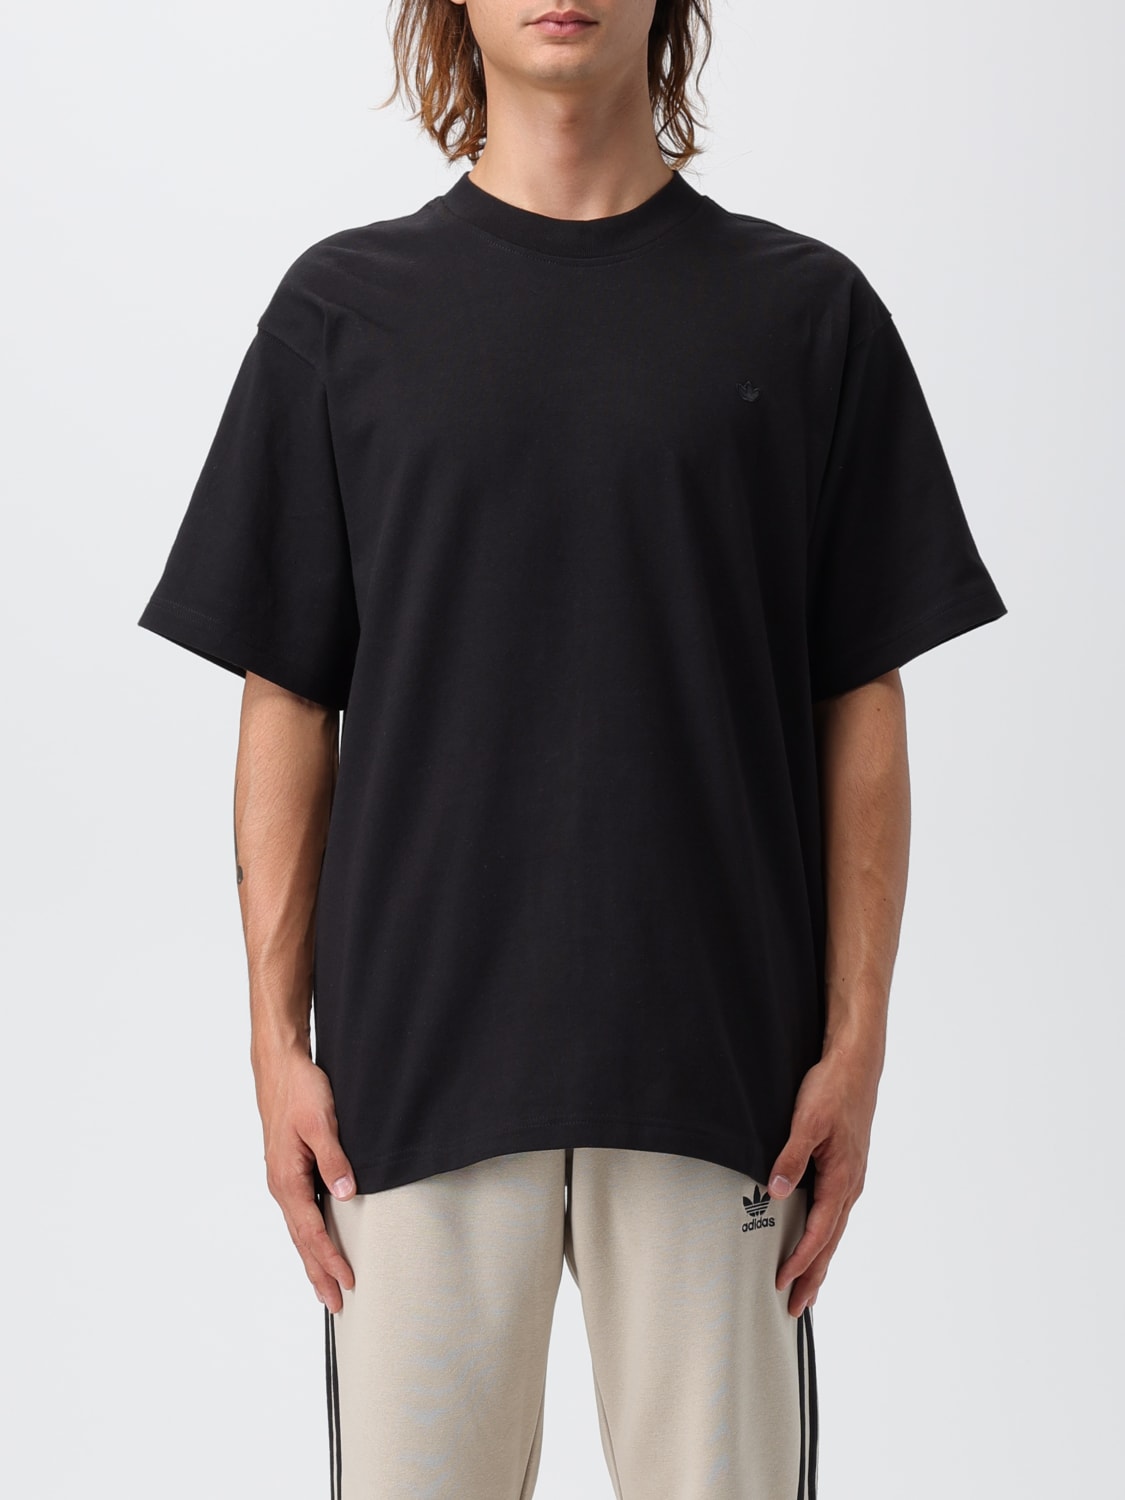 ADIDAS ORIGINALS: t-shirt for man - Black | Adidas Originals t-shirt ...